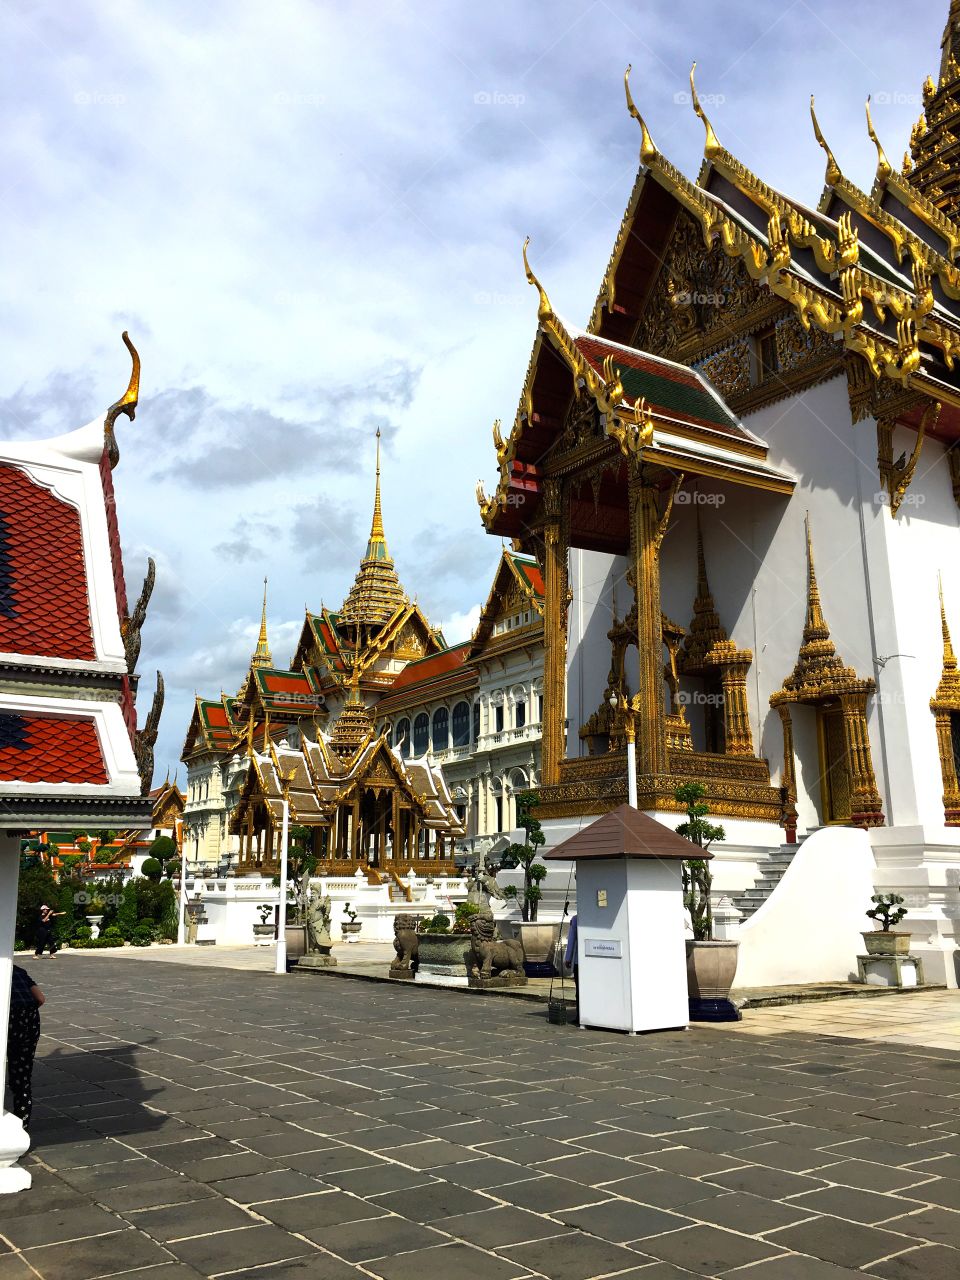 Grand Palace / Bangkok Thailand 93